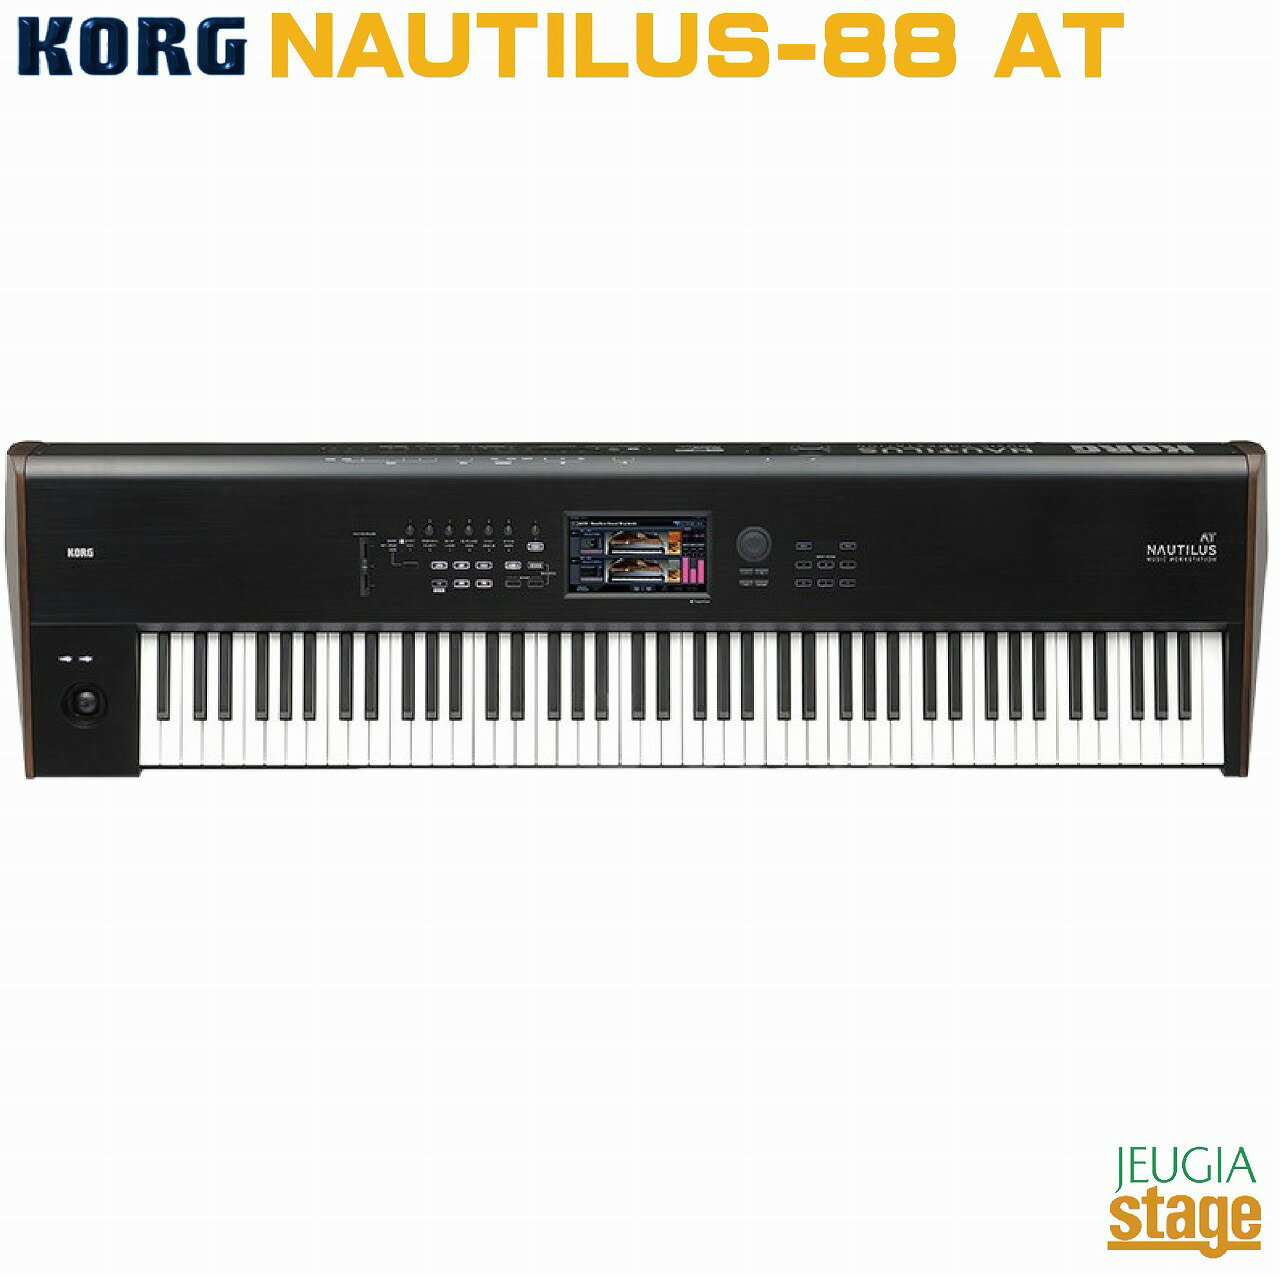 KORG / NAUTILUS-88 AT アフタータッチを装備し、完成度を極めたフラッグシップ・モデルのRH3 (リアル・ウェイテッド・ハンマー・アクション3)88鍵盤タイプ。 コルグのフラッグシップ・ワークステーション、NAUTILUS（ノーチラス）に新たに2つのモデル、61鍵盤および88鍵盤のバージョンが用意されたNAUTILUS AT（AfterTouch）がラインナップに加わります。NAUTILUSの卓越した表現力は新たにアフタータッチ機能を装備し、ここに極まります。 NAUTILUS ATは、このモデルのために新たにチューニングを行ったサウンド・ライブラリーを搭載しており、既存プログラムにも刺激的なアフタータッチ効果を加えることで、箱から取り出してすぐにアフタータッチの表現力を存分に発揮することができます。 鍵盤の打鍵の強弱（ベロシティ）による音量や音色の変化具合を即座にコントロールできるダイナミックス・ノブに、今回アフタータッチが組み合わさることで、NAUTILUSの9種類のサウンド・エンジンが持つ潜在能力をフルに引き出します。 NAUTILUS ATには、ピアノ・フィーリングを追求したプレミアムなRH3鍵盤を搭載した88鍵盤モデルと、軽快なレスポンスが特徴のシンセ鍵盤を搭載した61鍵盤モデルの2タイプ*をラインナップ。 *NAUTILUS-73にATバージョンはございません。 フラッグシップ・モデルのプレミアムな品質 NAUTILUSは、日本国内の工場で最高レベルの品質で製造されています。88鍵盤モデルには高い評価を得ているRH-3ピアノ鍵盤を採用。4段階の重さに分けたハンマー・アクション鍵盤は、耳の肥えた奏者にも非常にリアルなピアノ・フィーリングを提供します。このRH-3鍵盤は、低音部ではより重く、高音部ではより軽い感触が得られるよう段階的に加重されており、優れた演奏性を実現。一方、61鍵盤モデルには軽快なタッチのシンセ鍵盤を搭載し、複雑なフレーズも確実かつスムーズに再現します。 NAUTILUS ATはパネル上のロゴに「AT」の文字を追加しており、特別なモデルであることが一目で確認できます。 【主な仕様】 ■鍵盤： ・88 鍵: RH3 (リアル・ウェイテッド・ハンマー・アクション3)鍵盤* ・61 鍵: ナチュラル・タッチ・セミ・ウェイテッド鍵盤* ・*ベロシティ対応、アフタータッチ対応 ■外形寸法: (W x D x H) ・88 鍵モデル: 1,437 x 387 x 139 mm ・61 鍵モデル: 1,062 x 386 x 116 mm ■質量: ・88 鍵モデル: 23.1 kg ・61 鍵モデル: 13.0 kg ※商品画像はサンプルです。 ★掲載の商品は店頭や他のECサイトでも並行して販売しております。在庫情報の更新には最大限の努力をしておりますが、ご注文が完了しましても売り切れでご用意できない場合がございます。 　また、お取り寄せ商品の場合、生産完了・メーカー価格改定などの理由でご用意できない場合がございます。 　その際はご注文をキャンセルさせていただきますので、予めご了承くださいませ。 ★お届け先が北海道や沖縄、その他離島の場合、「送料無料」と表記の商品であっても別途中継料や送料を頂戴いたします。その際は改めてご連絡を差し上げますのでご了承ください。